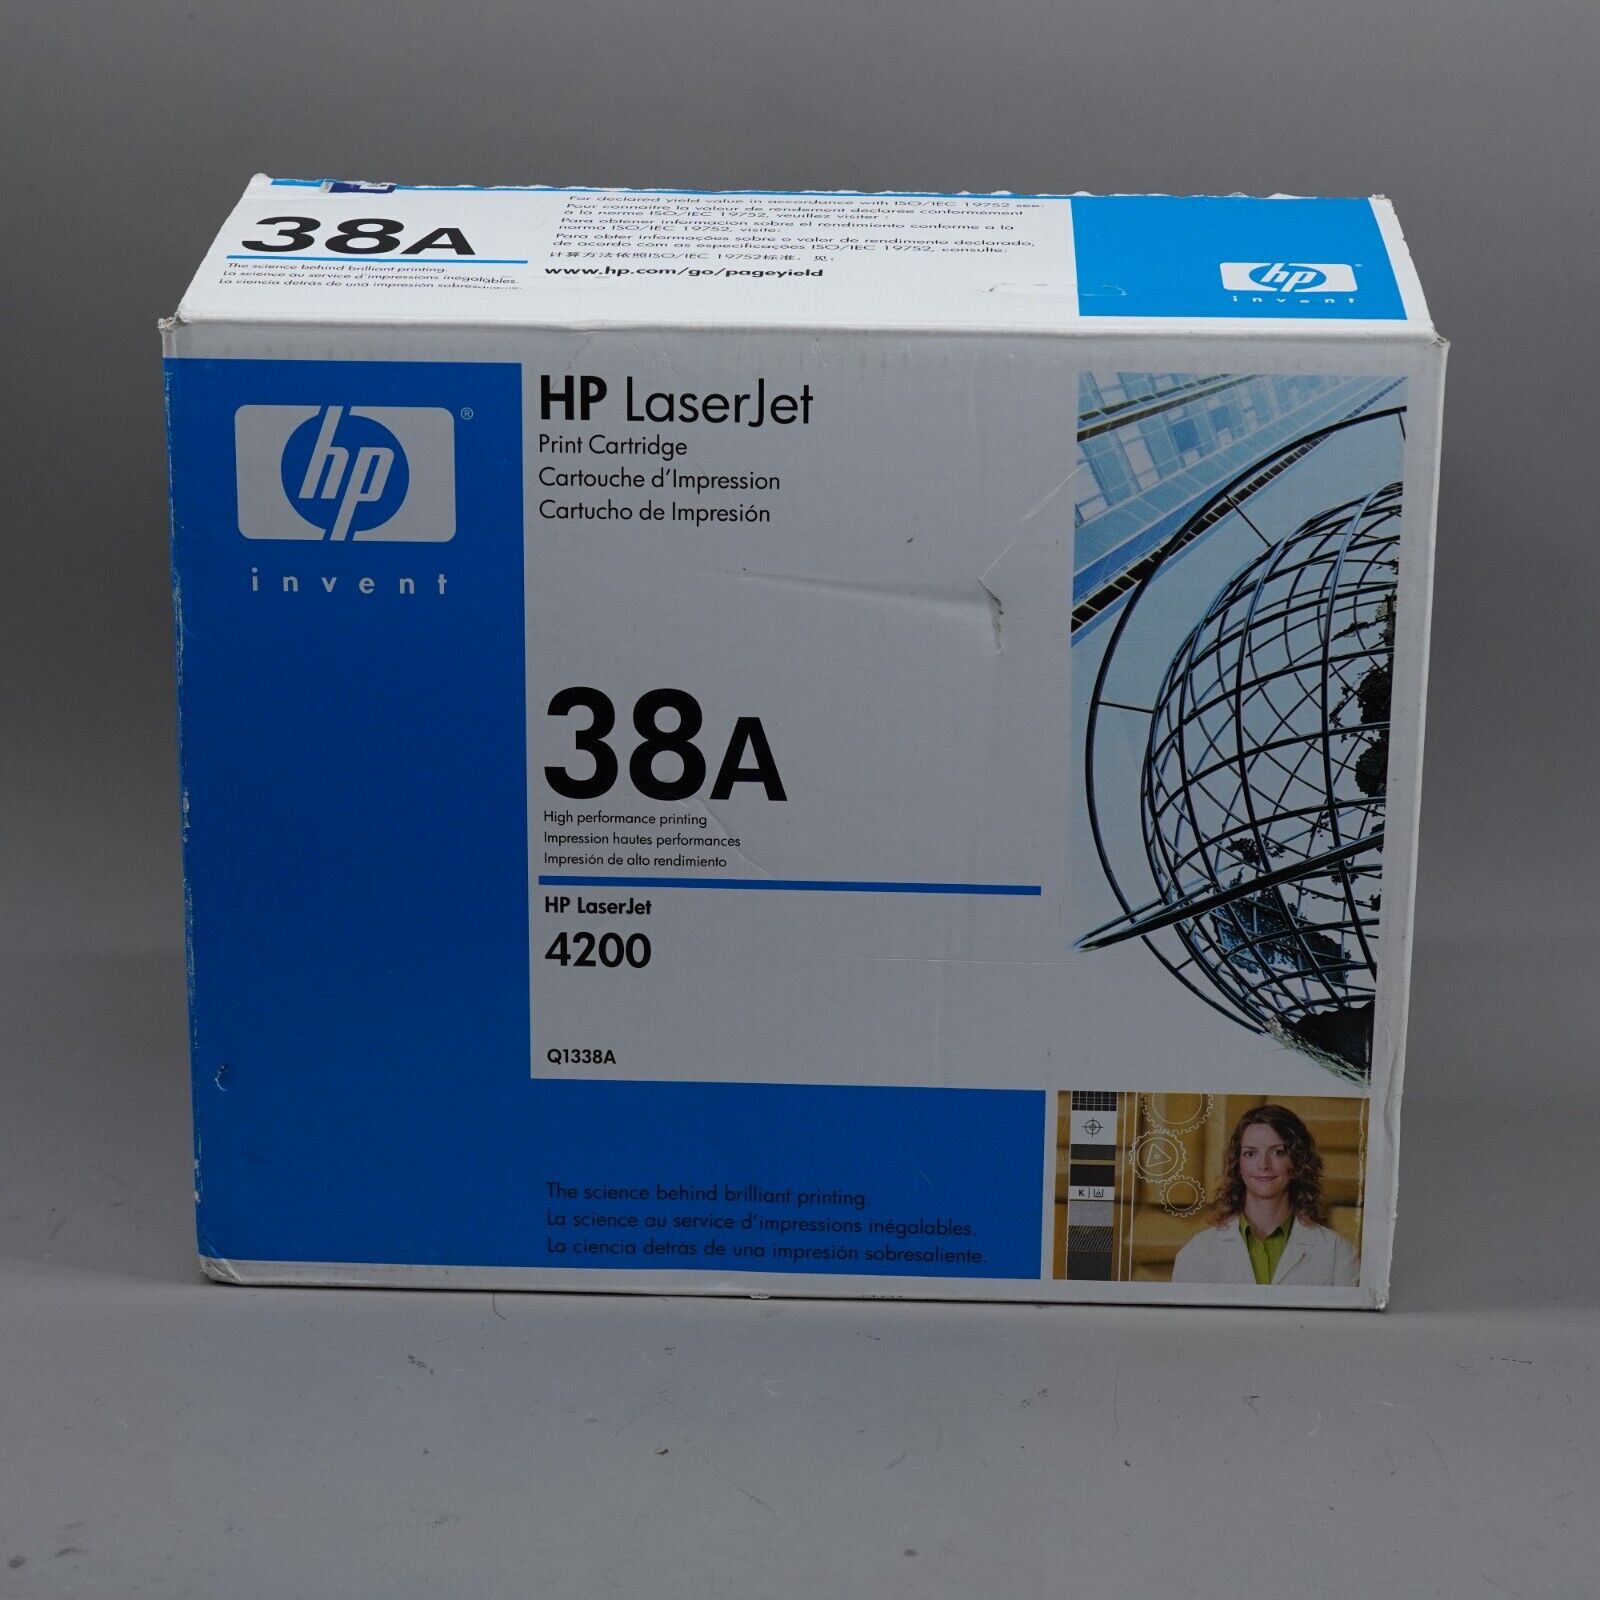 HP Laserjet Print Cartridge 38A Q1338A